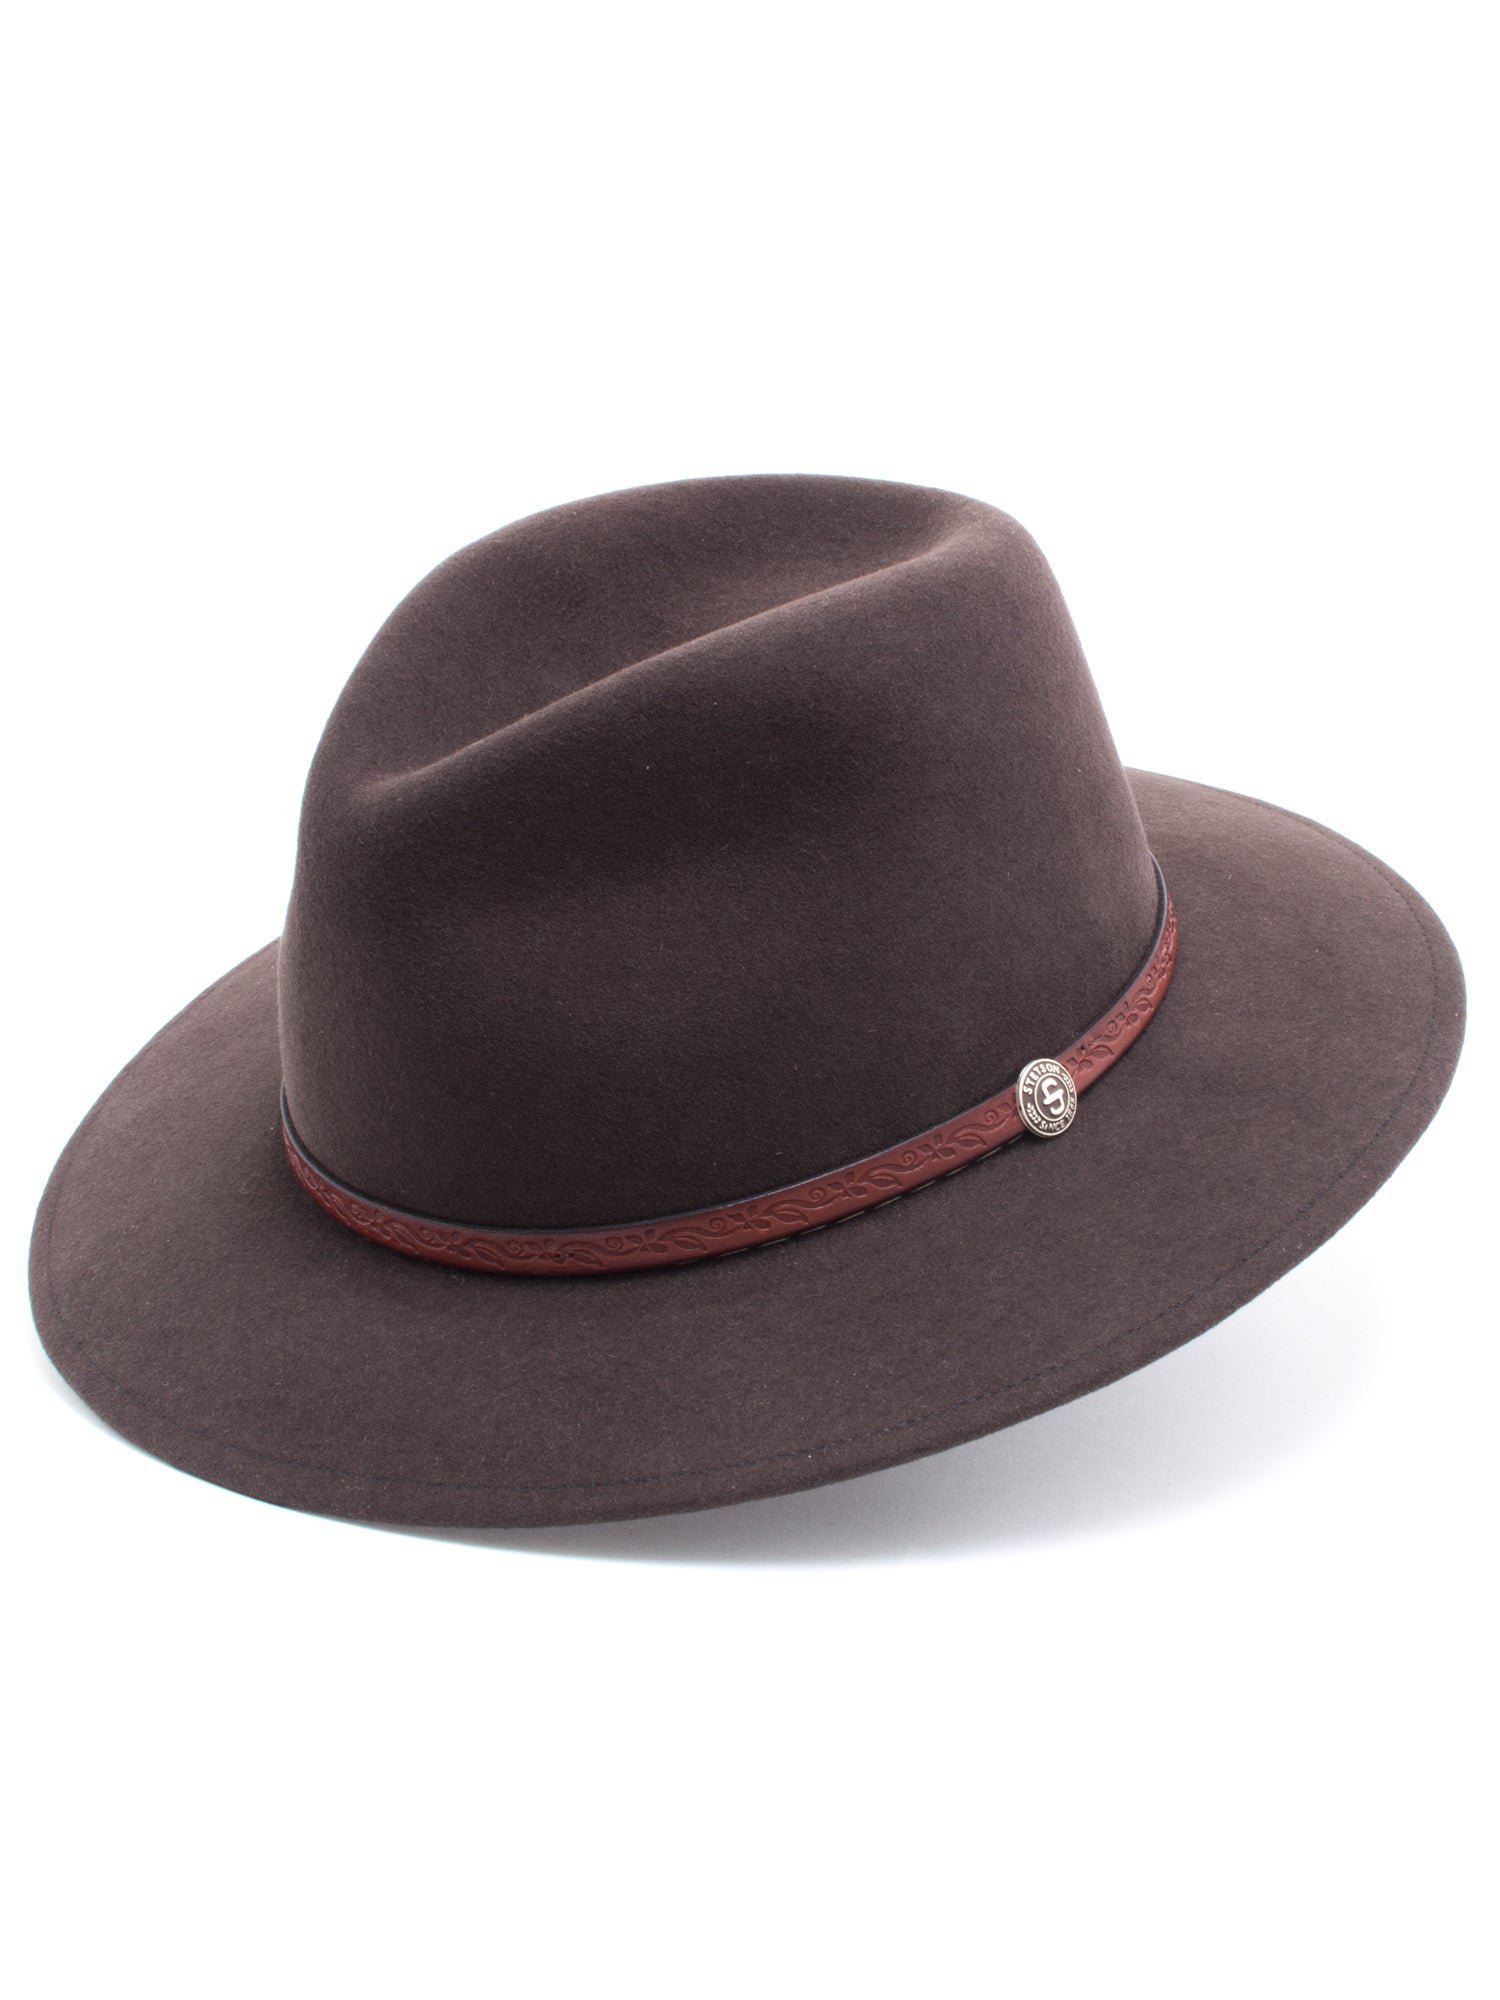 Stetson 100% Wool Felt 'Cromwell' Hats in Mink